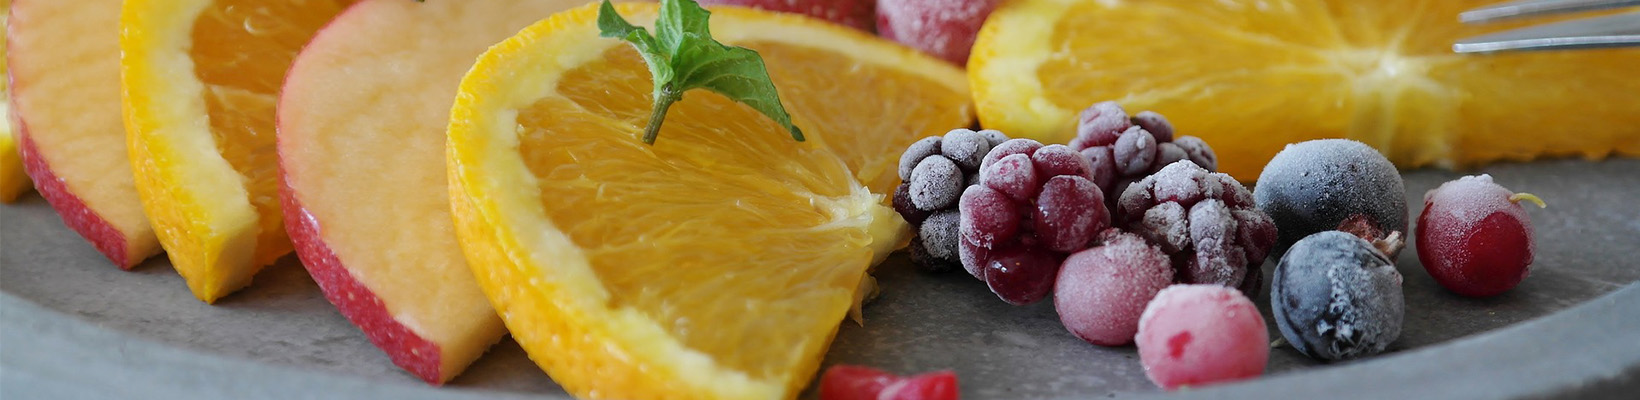 Обзор экотестеров для фруктов, овощей и ягод